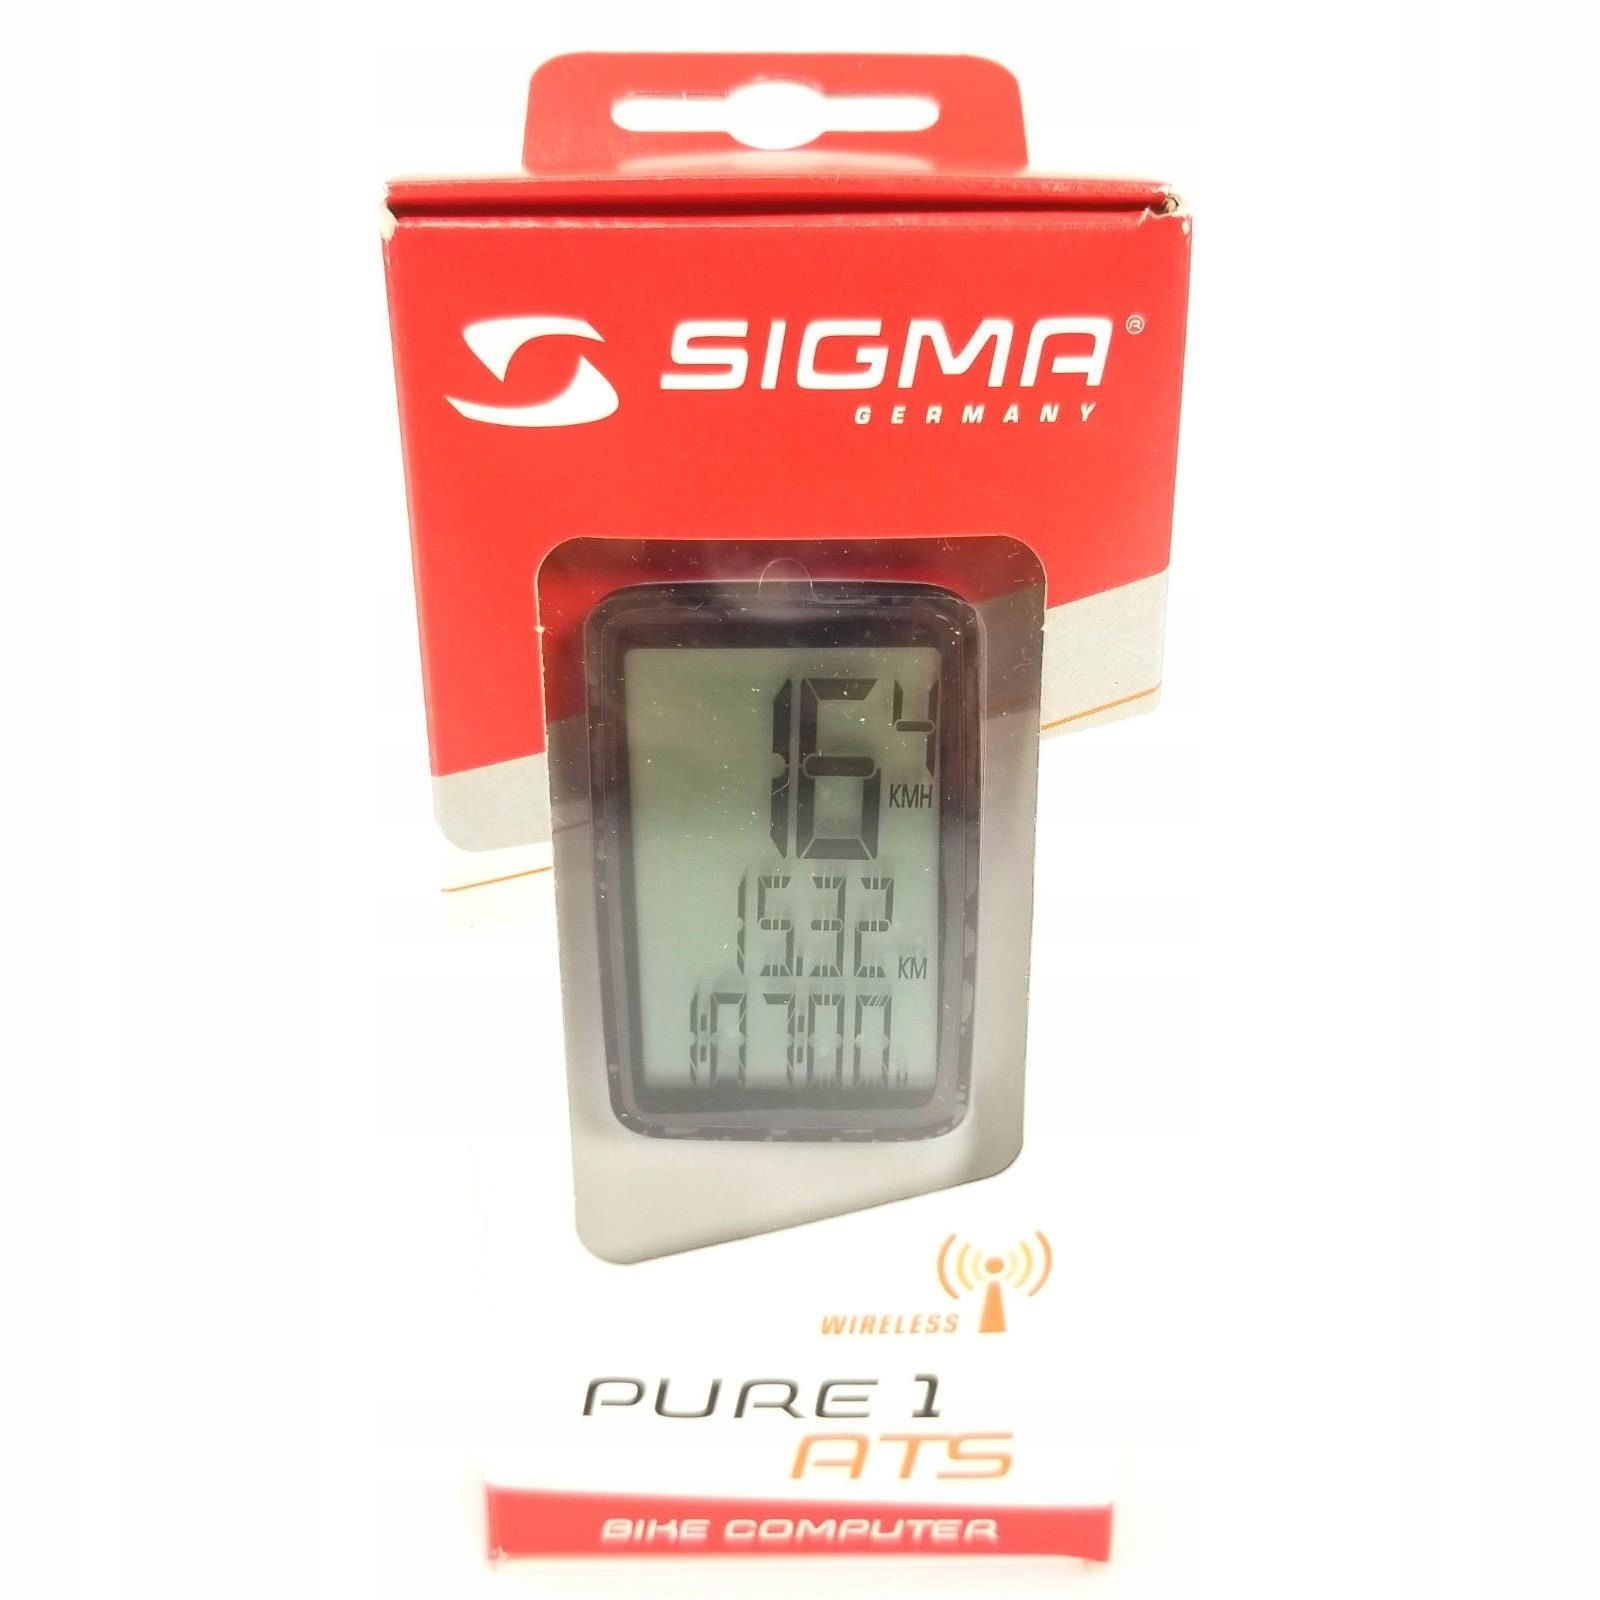 Licznik Sigma Sport Pure 1 Ats bezprzewodowy